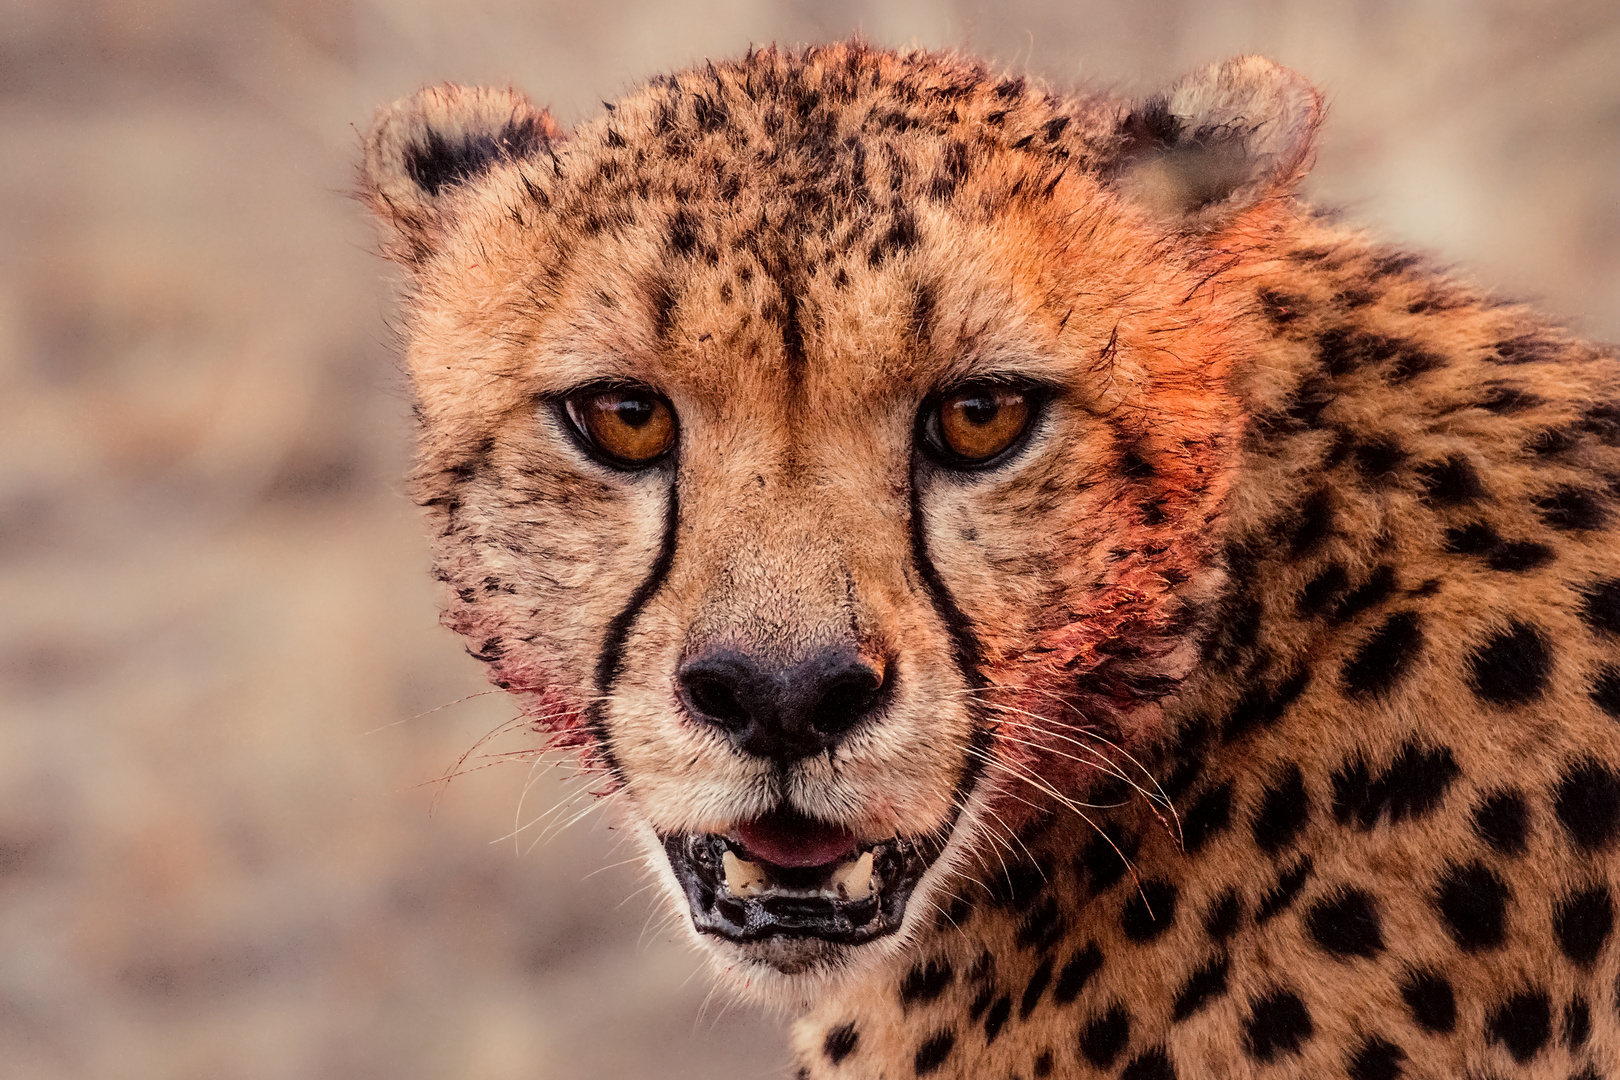 Cheetah After Dinner